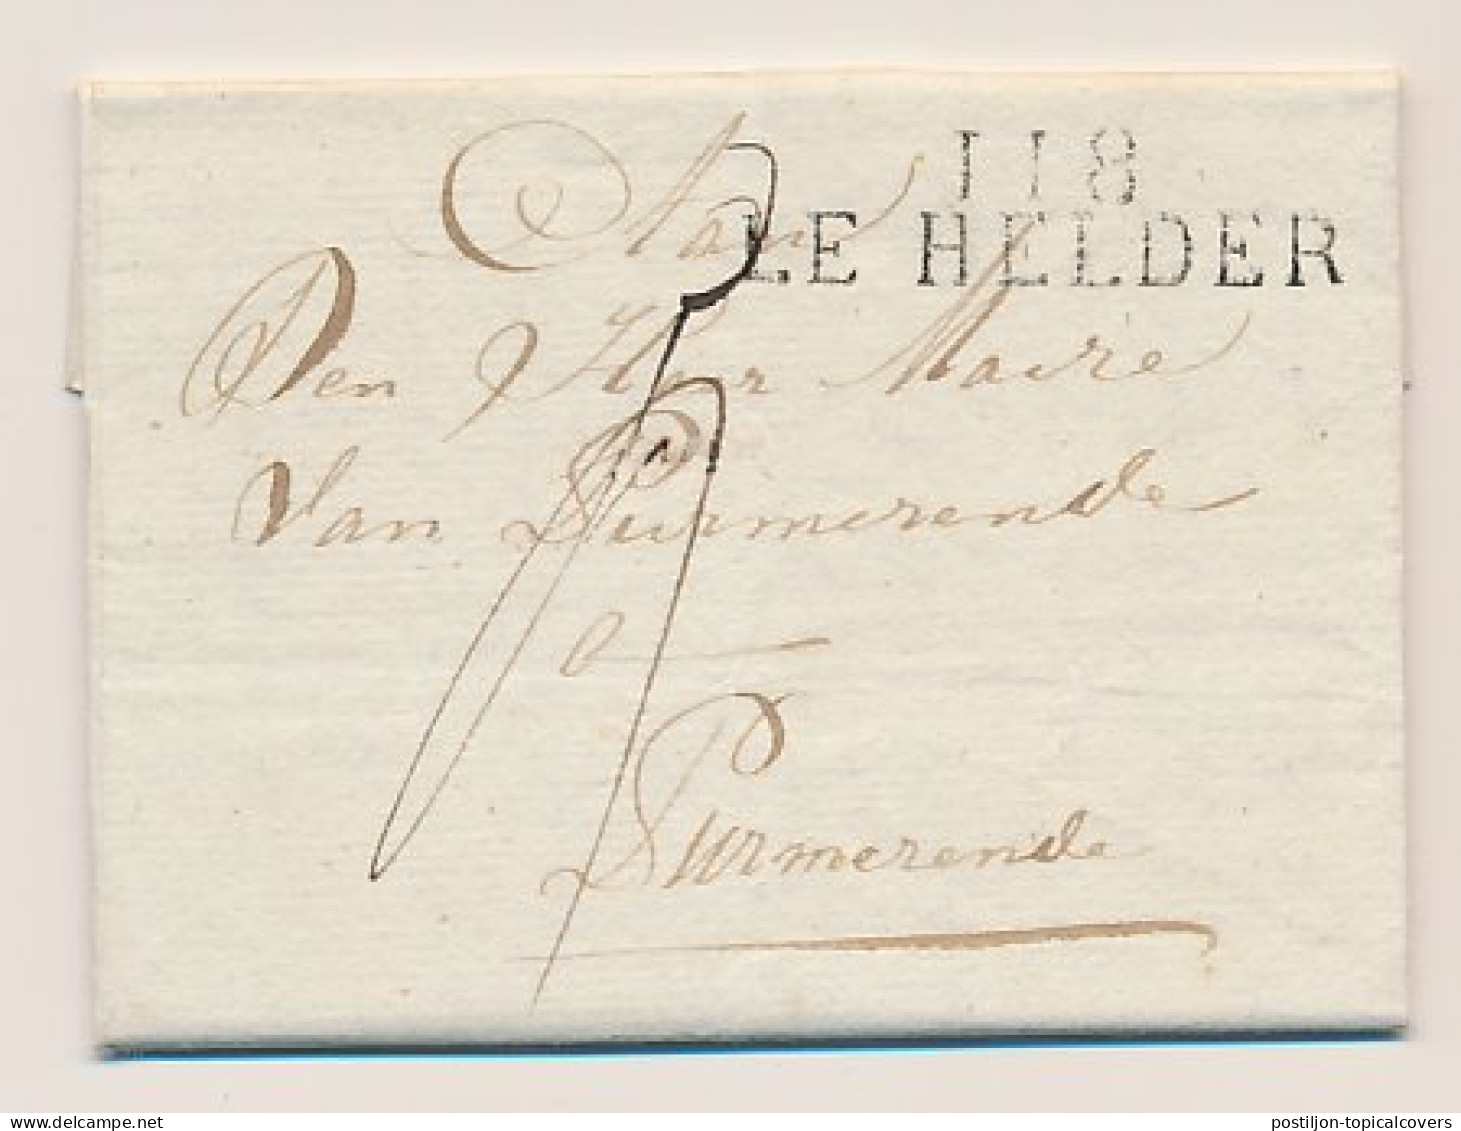 118 LE HELDER - Purmerend 1812 - ...-1852 Prephilately